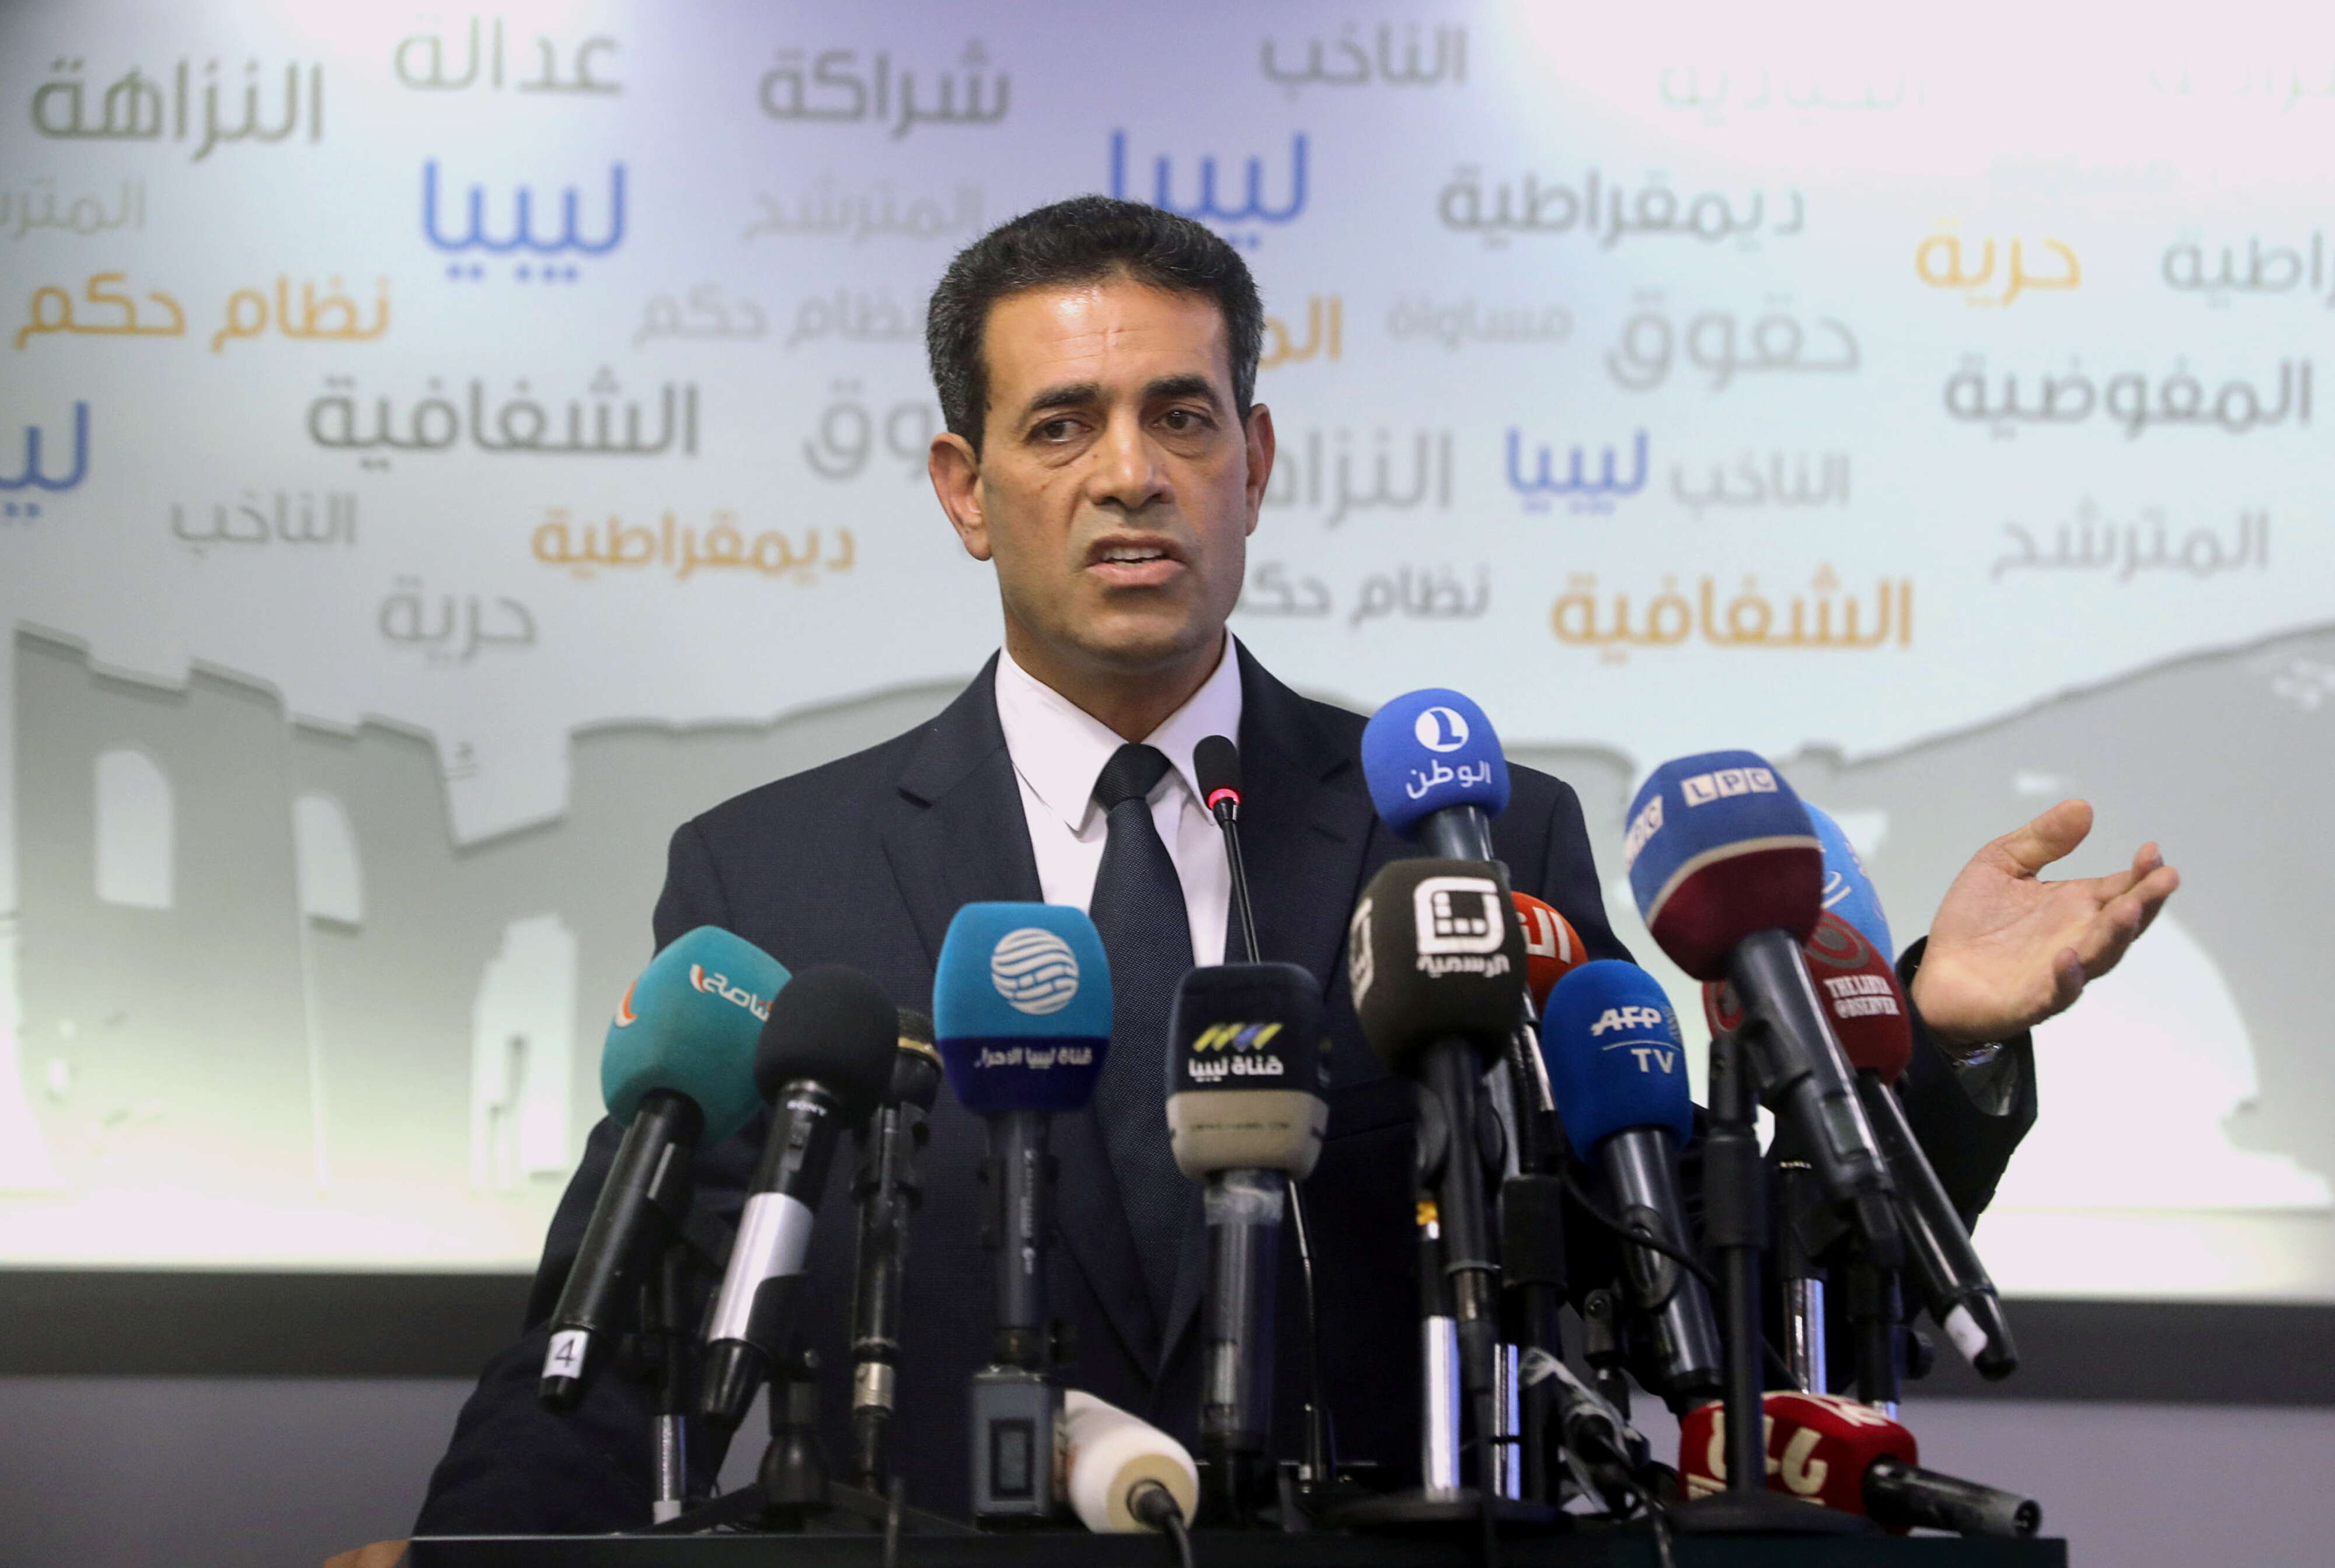 عماد السايح رئيس المفوضية العليا للانتخابات: على من له اعتراض أن يلجأ للقضاء